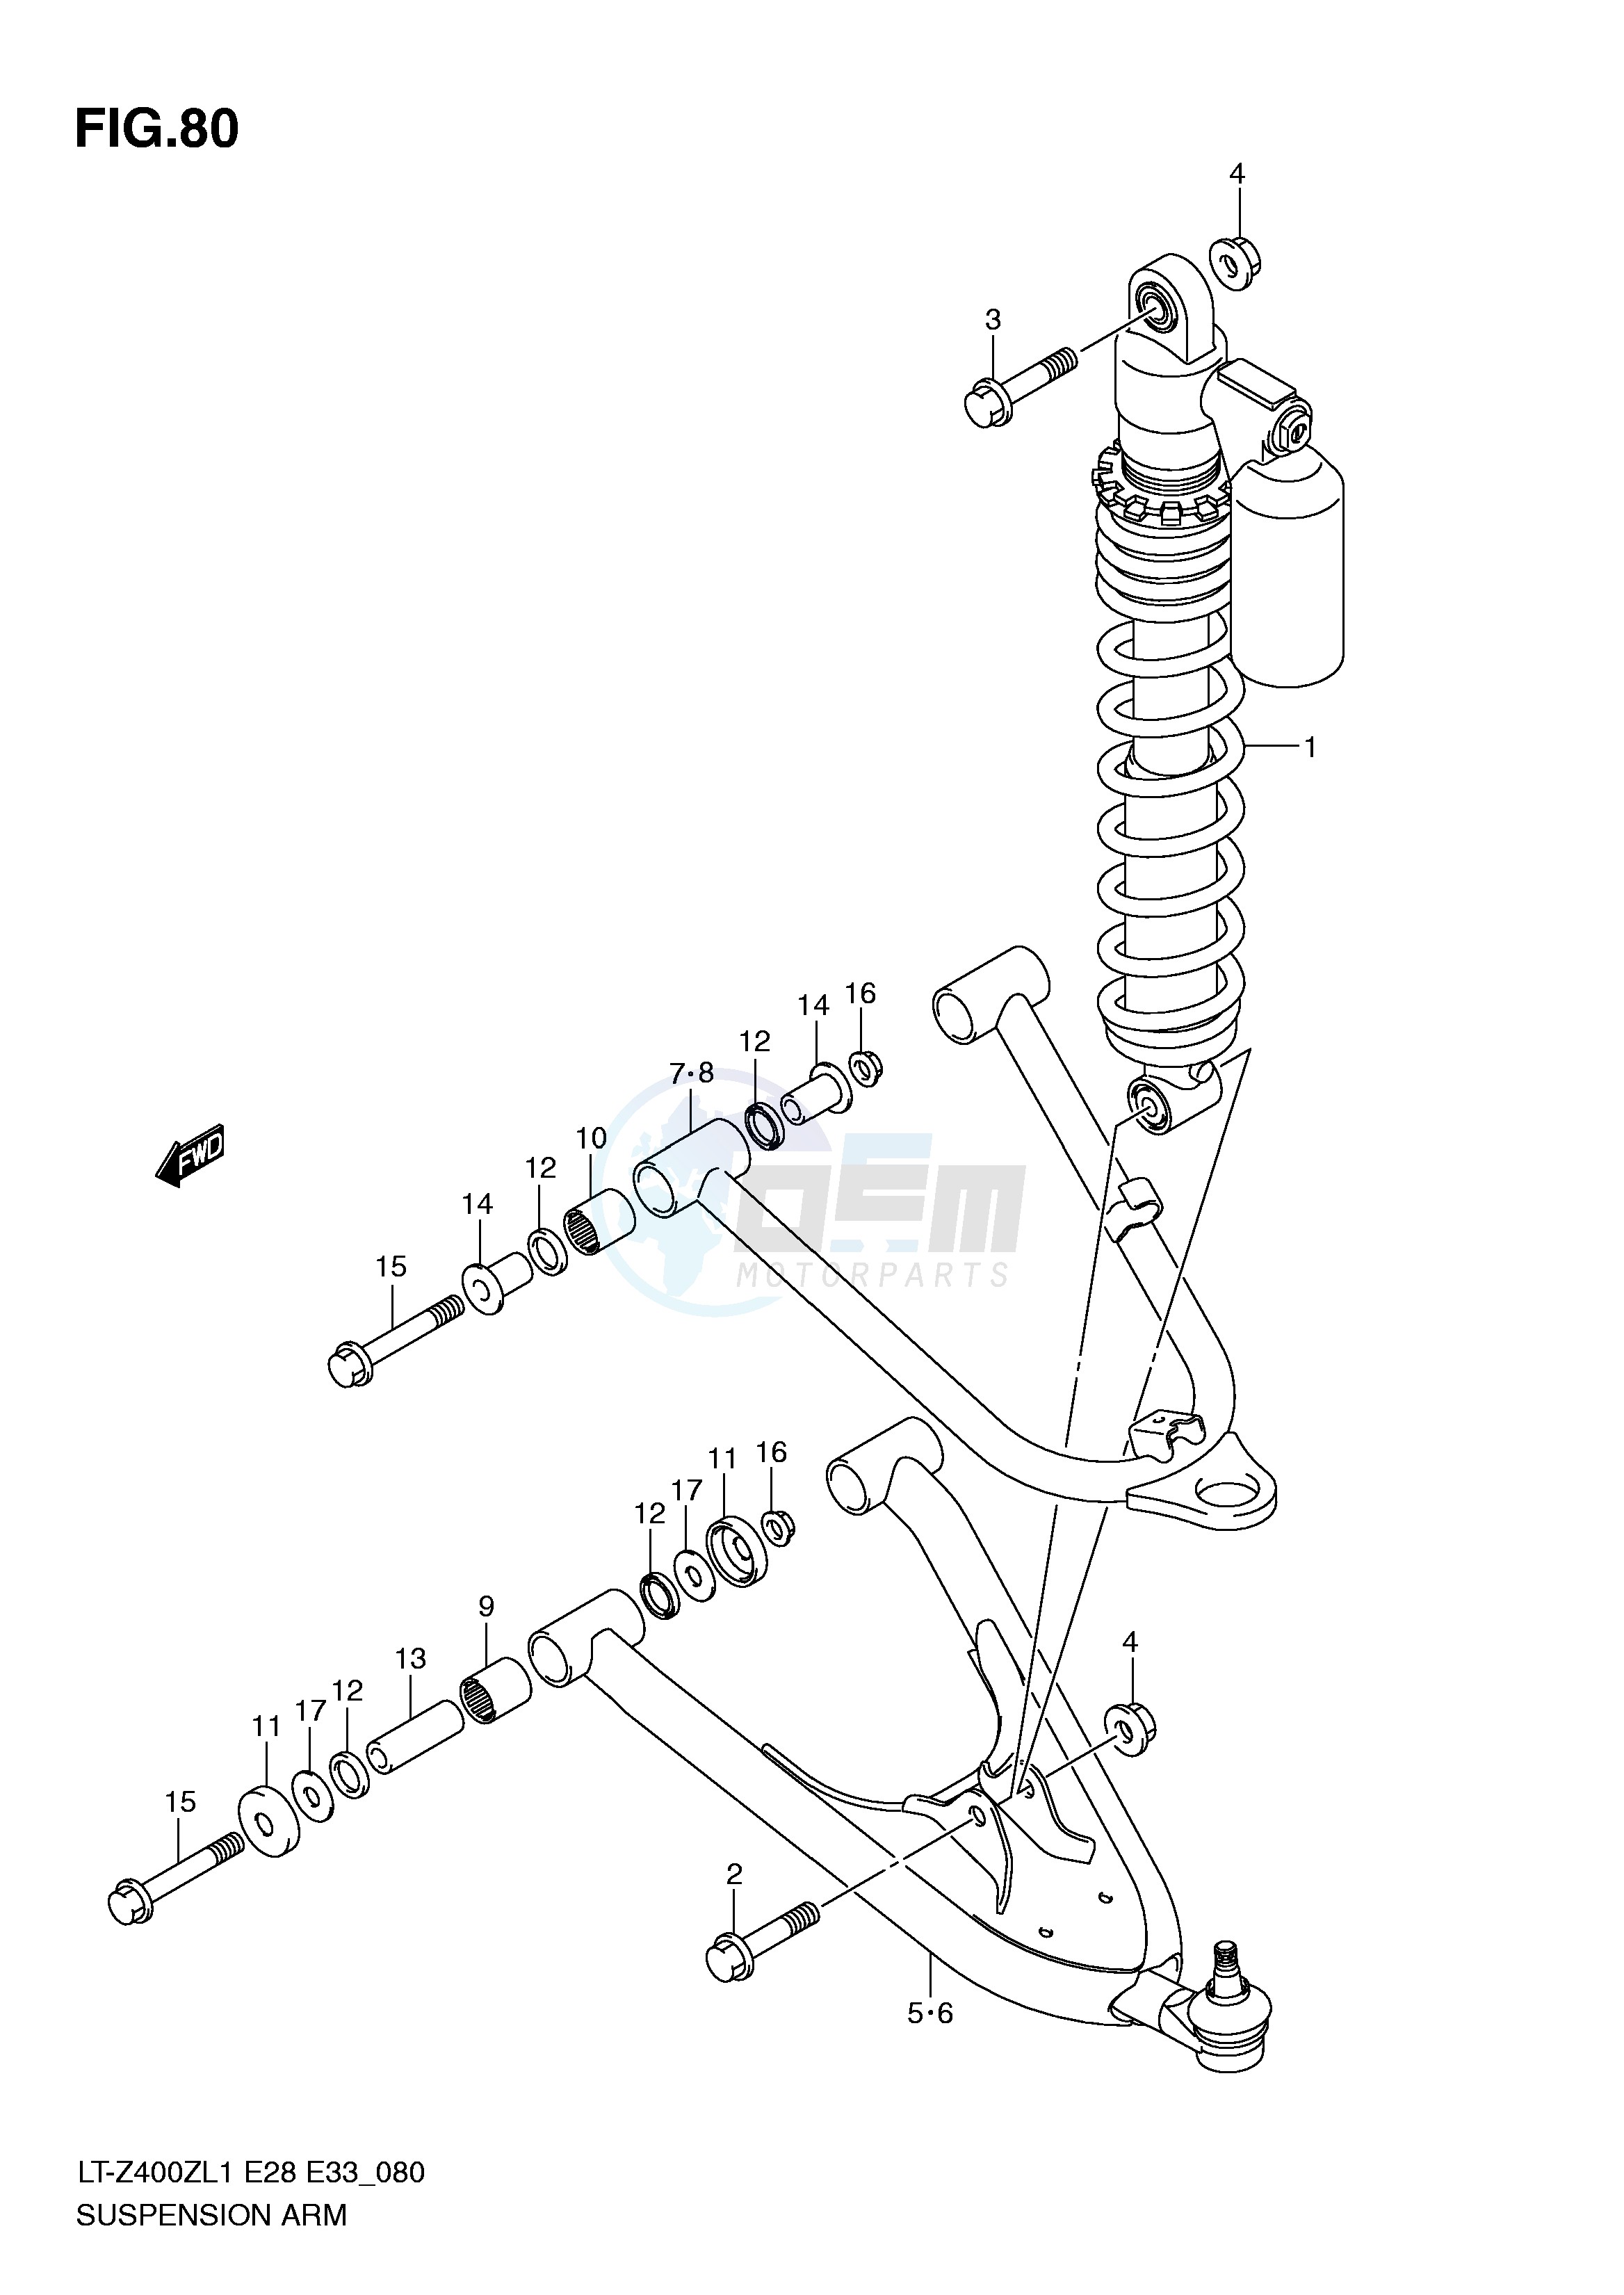 SUSPENSION ARM (LT-Z400ZL1 E33) blueprint